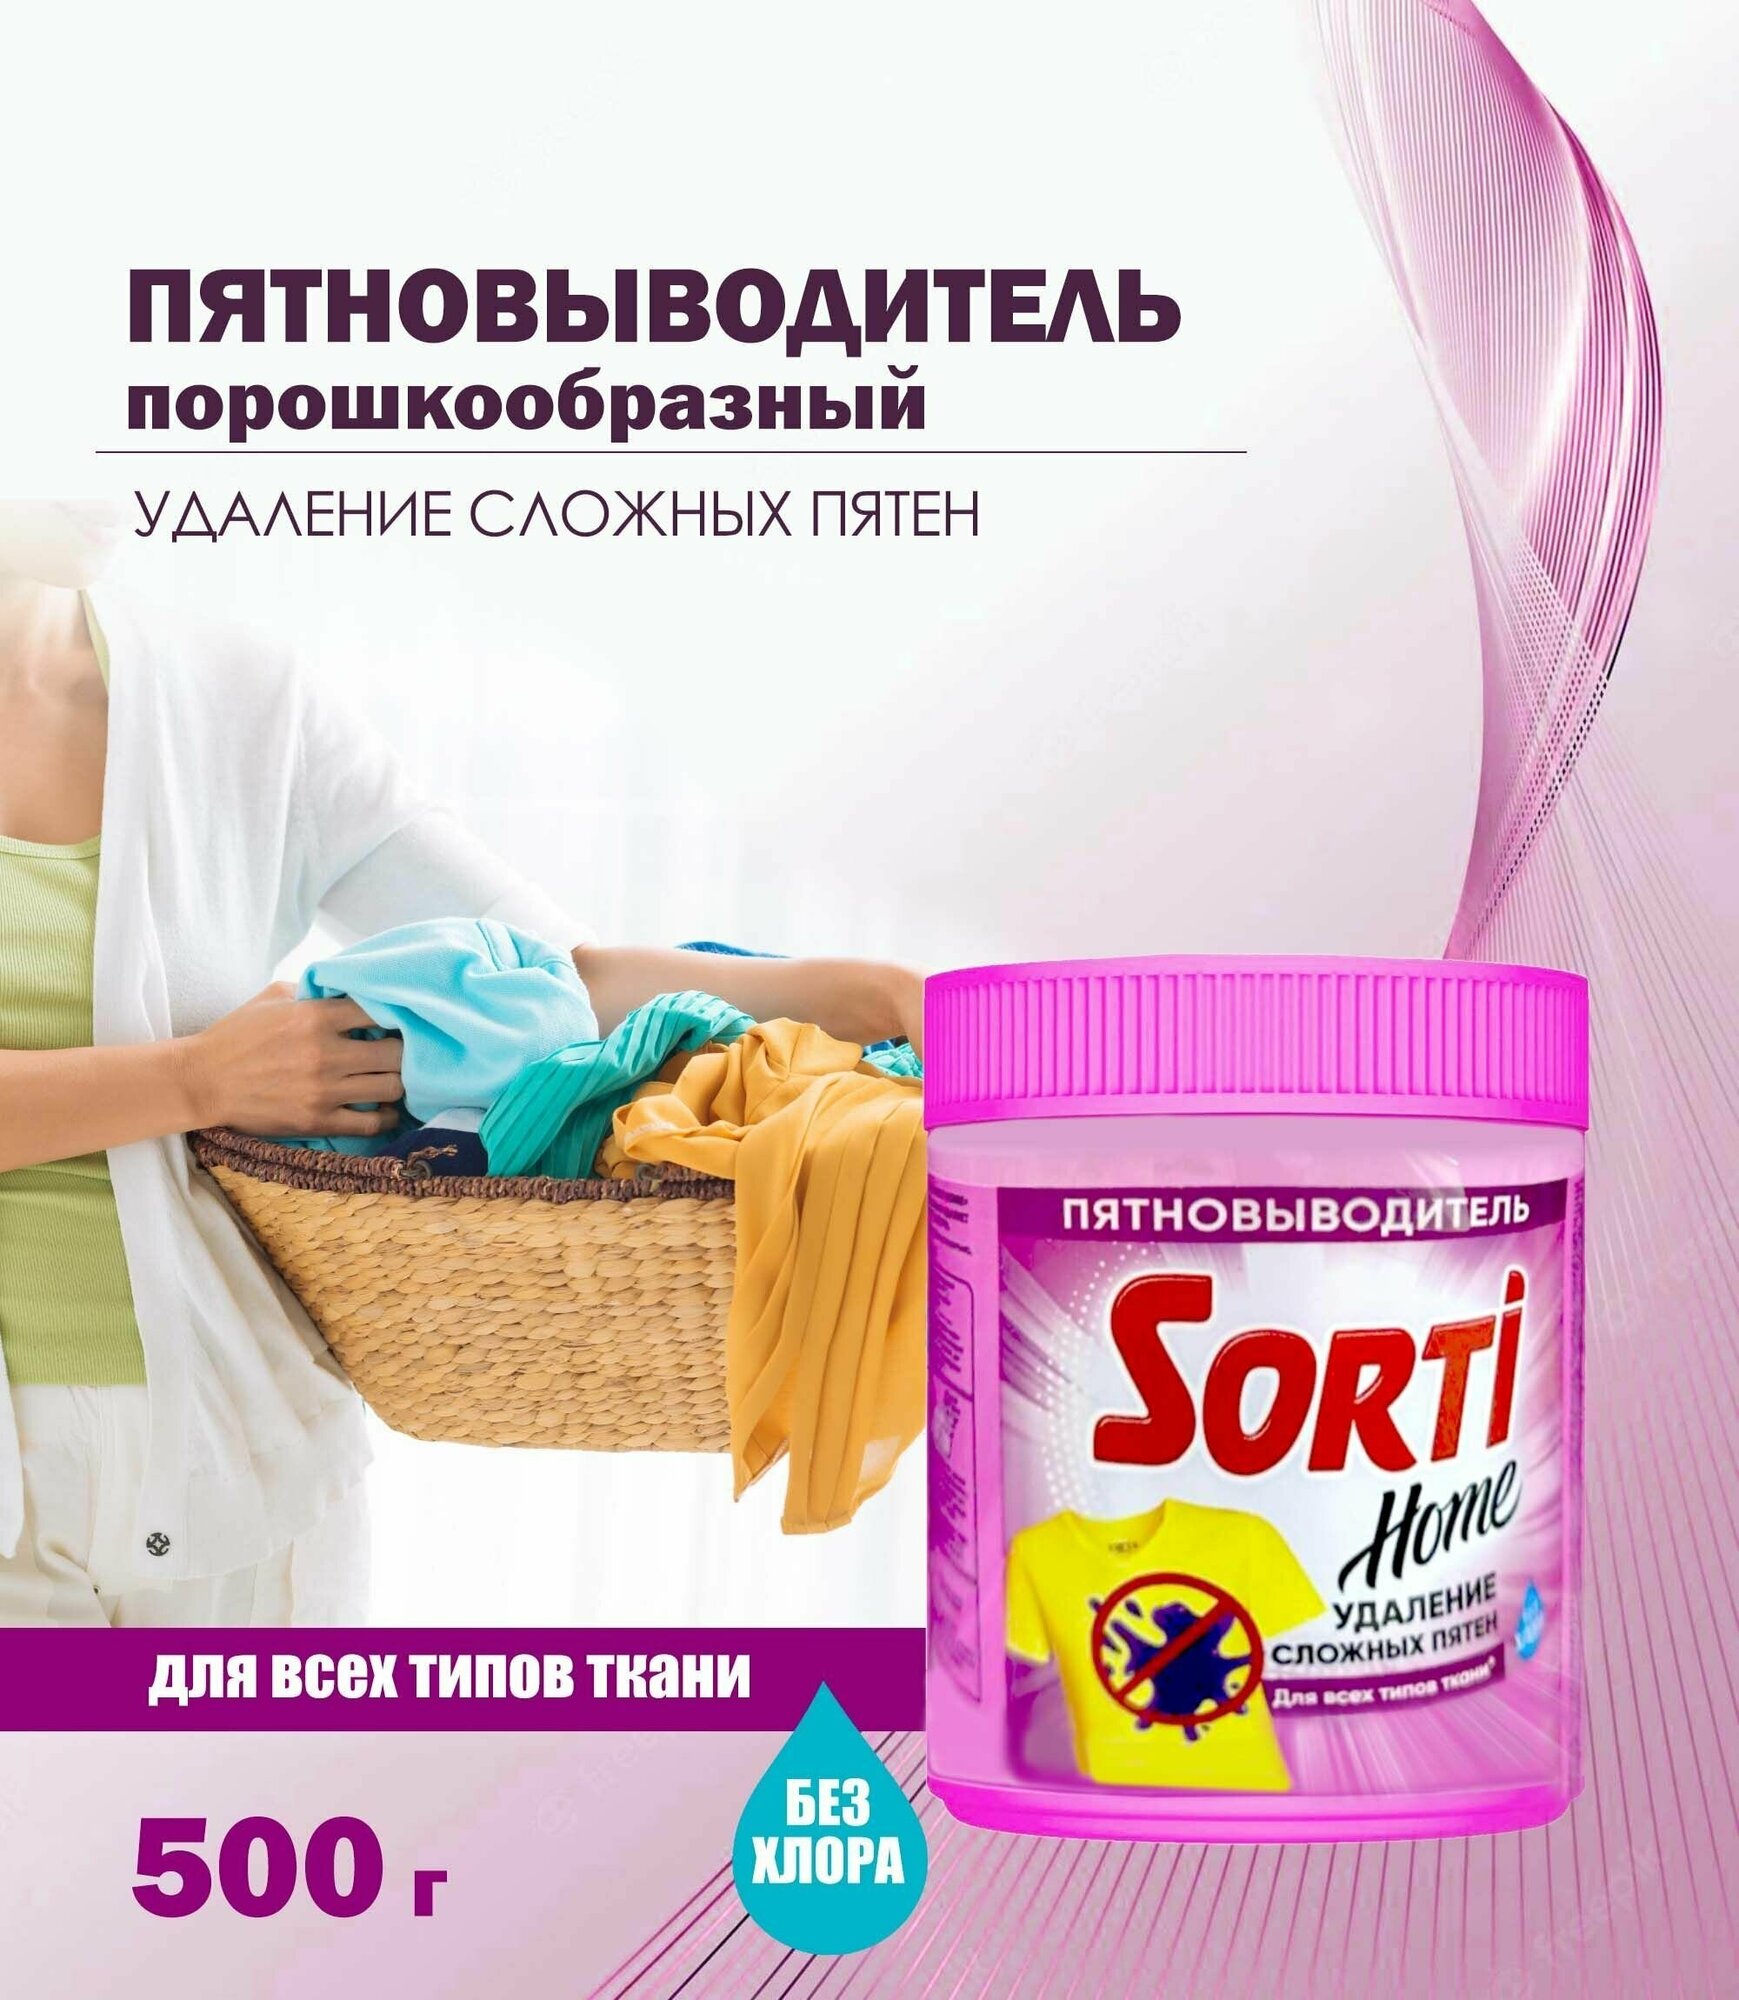 Пятновыводитель порошкообразный Sorti Home для всех типов ткани, 500 г